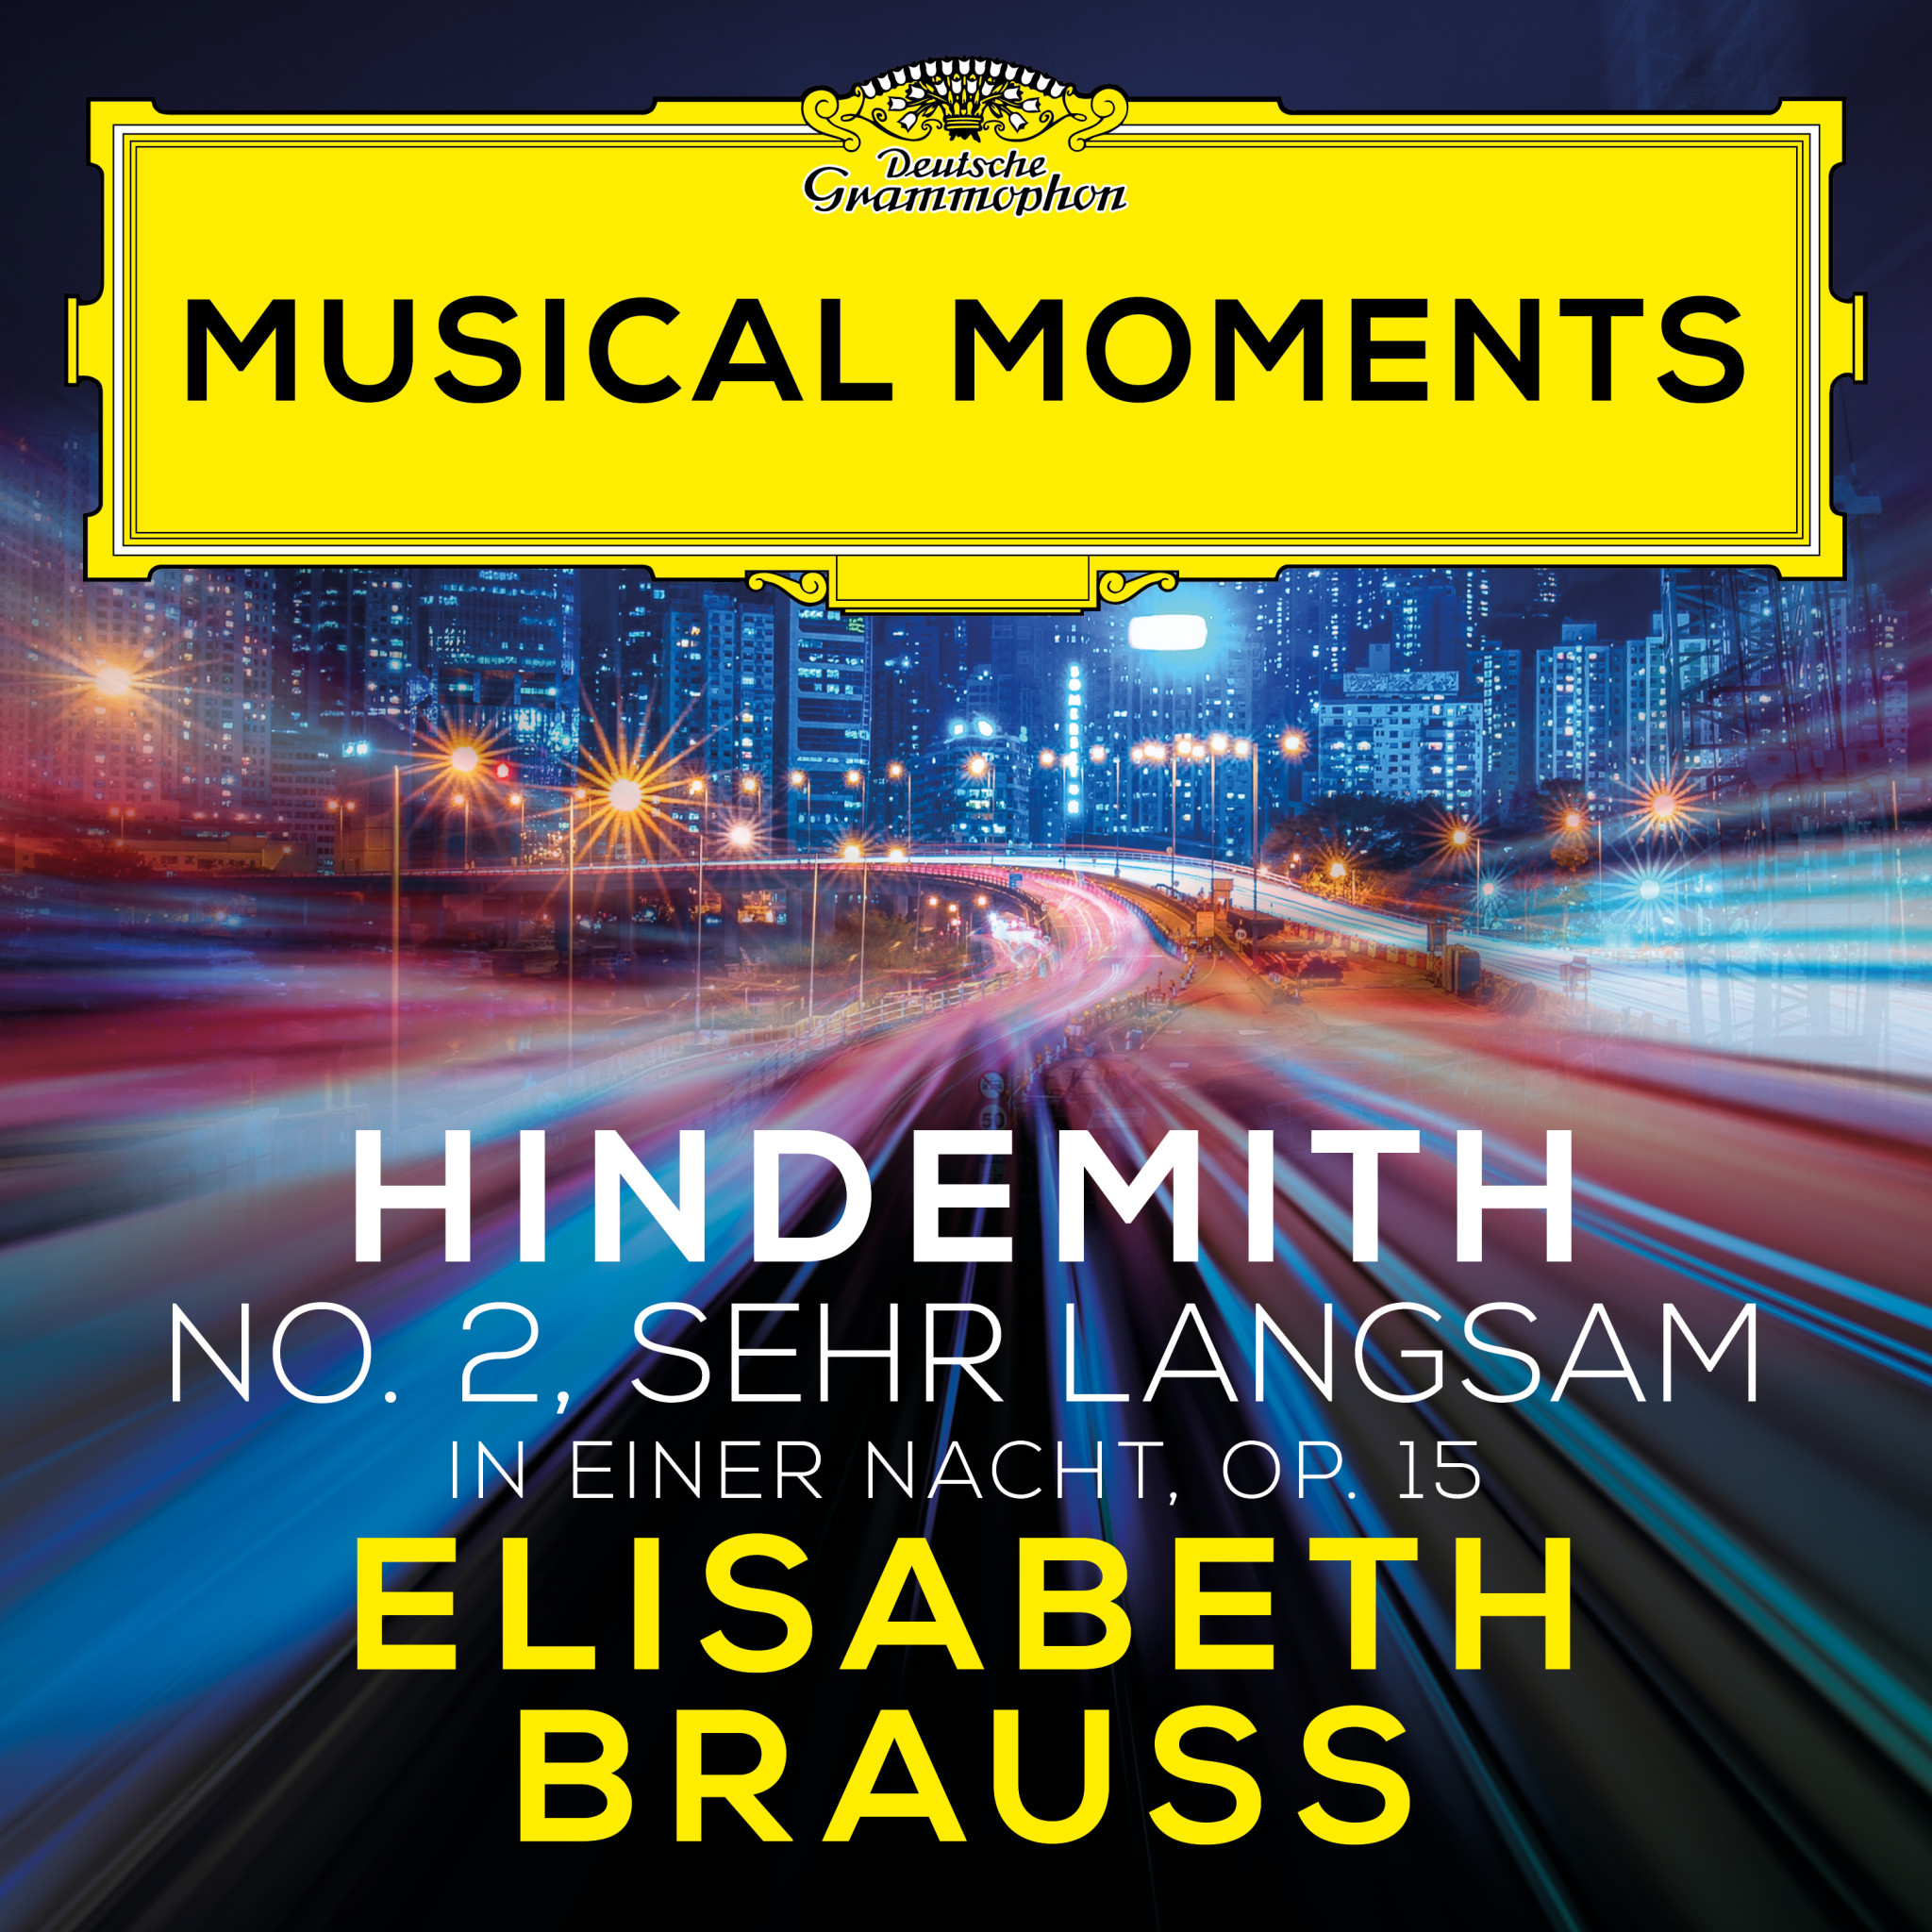 Elisabeth Brauss - Hindemith: In einer Nacht, Op. 15: No. 2, Sehr langsam Musical Moments Cover